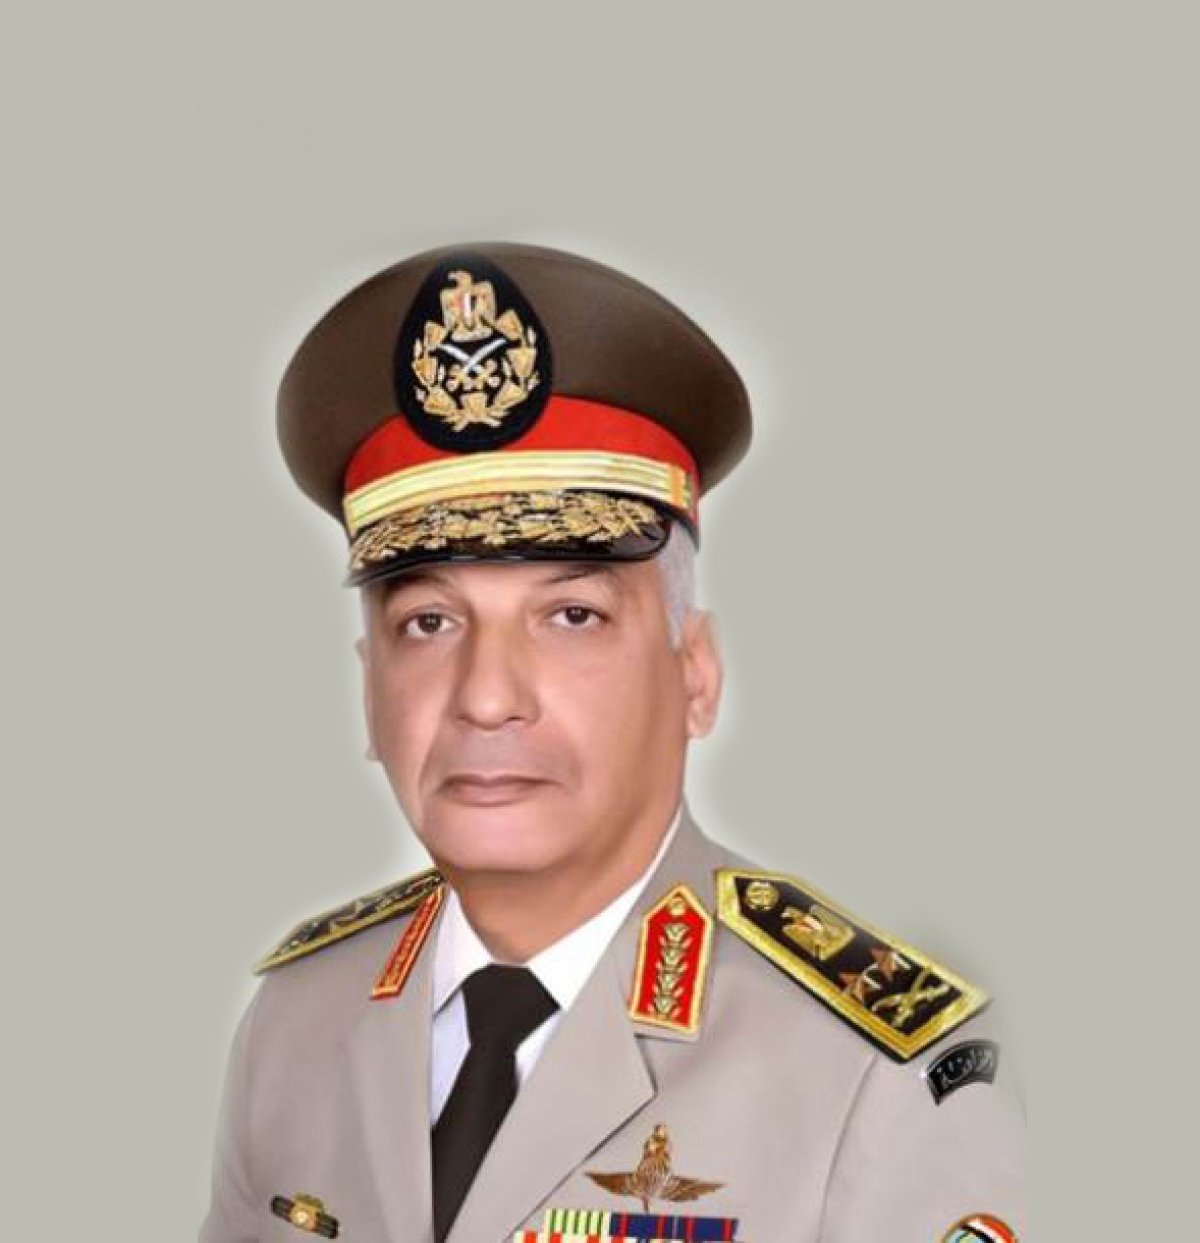  القوات المسلحة تهنئ رئيس الجمهورية بمناسبة الذكرى الحادية والأربعين لتحرير سيناء